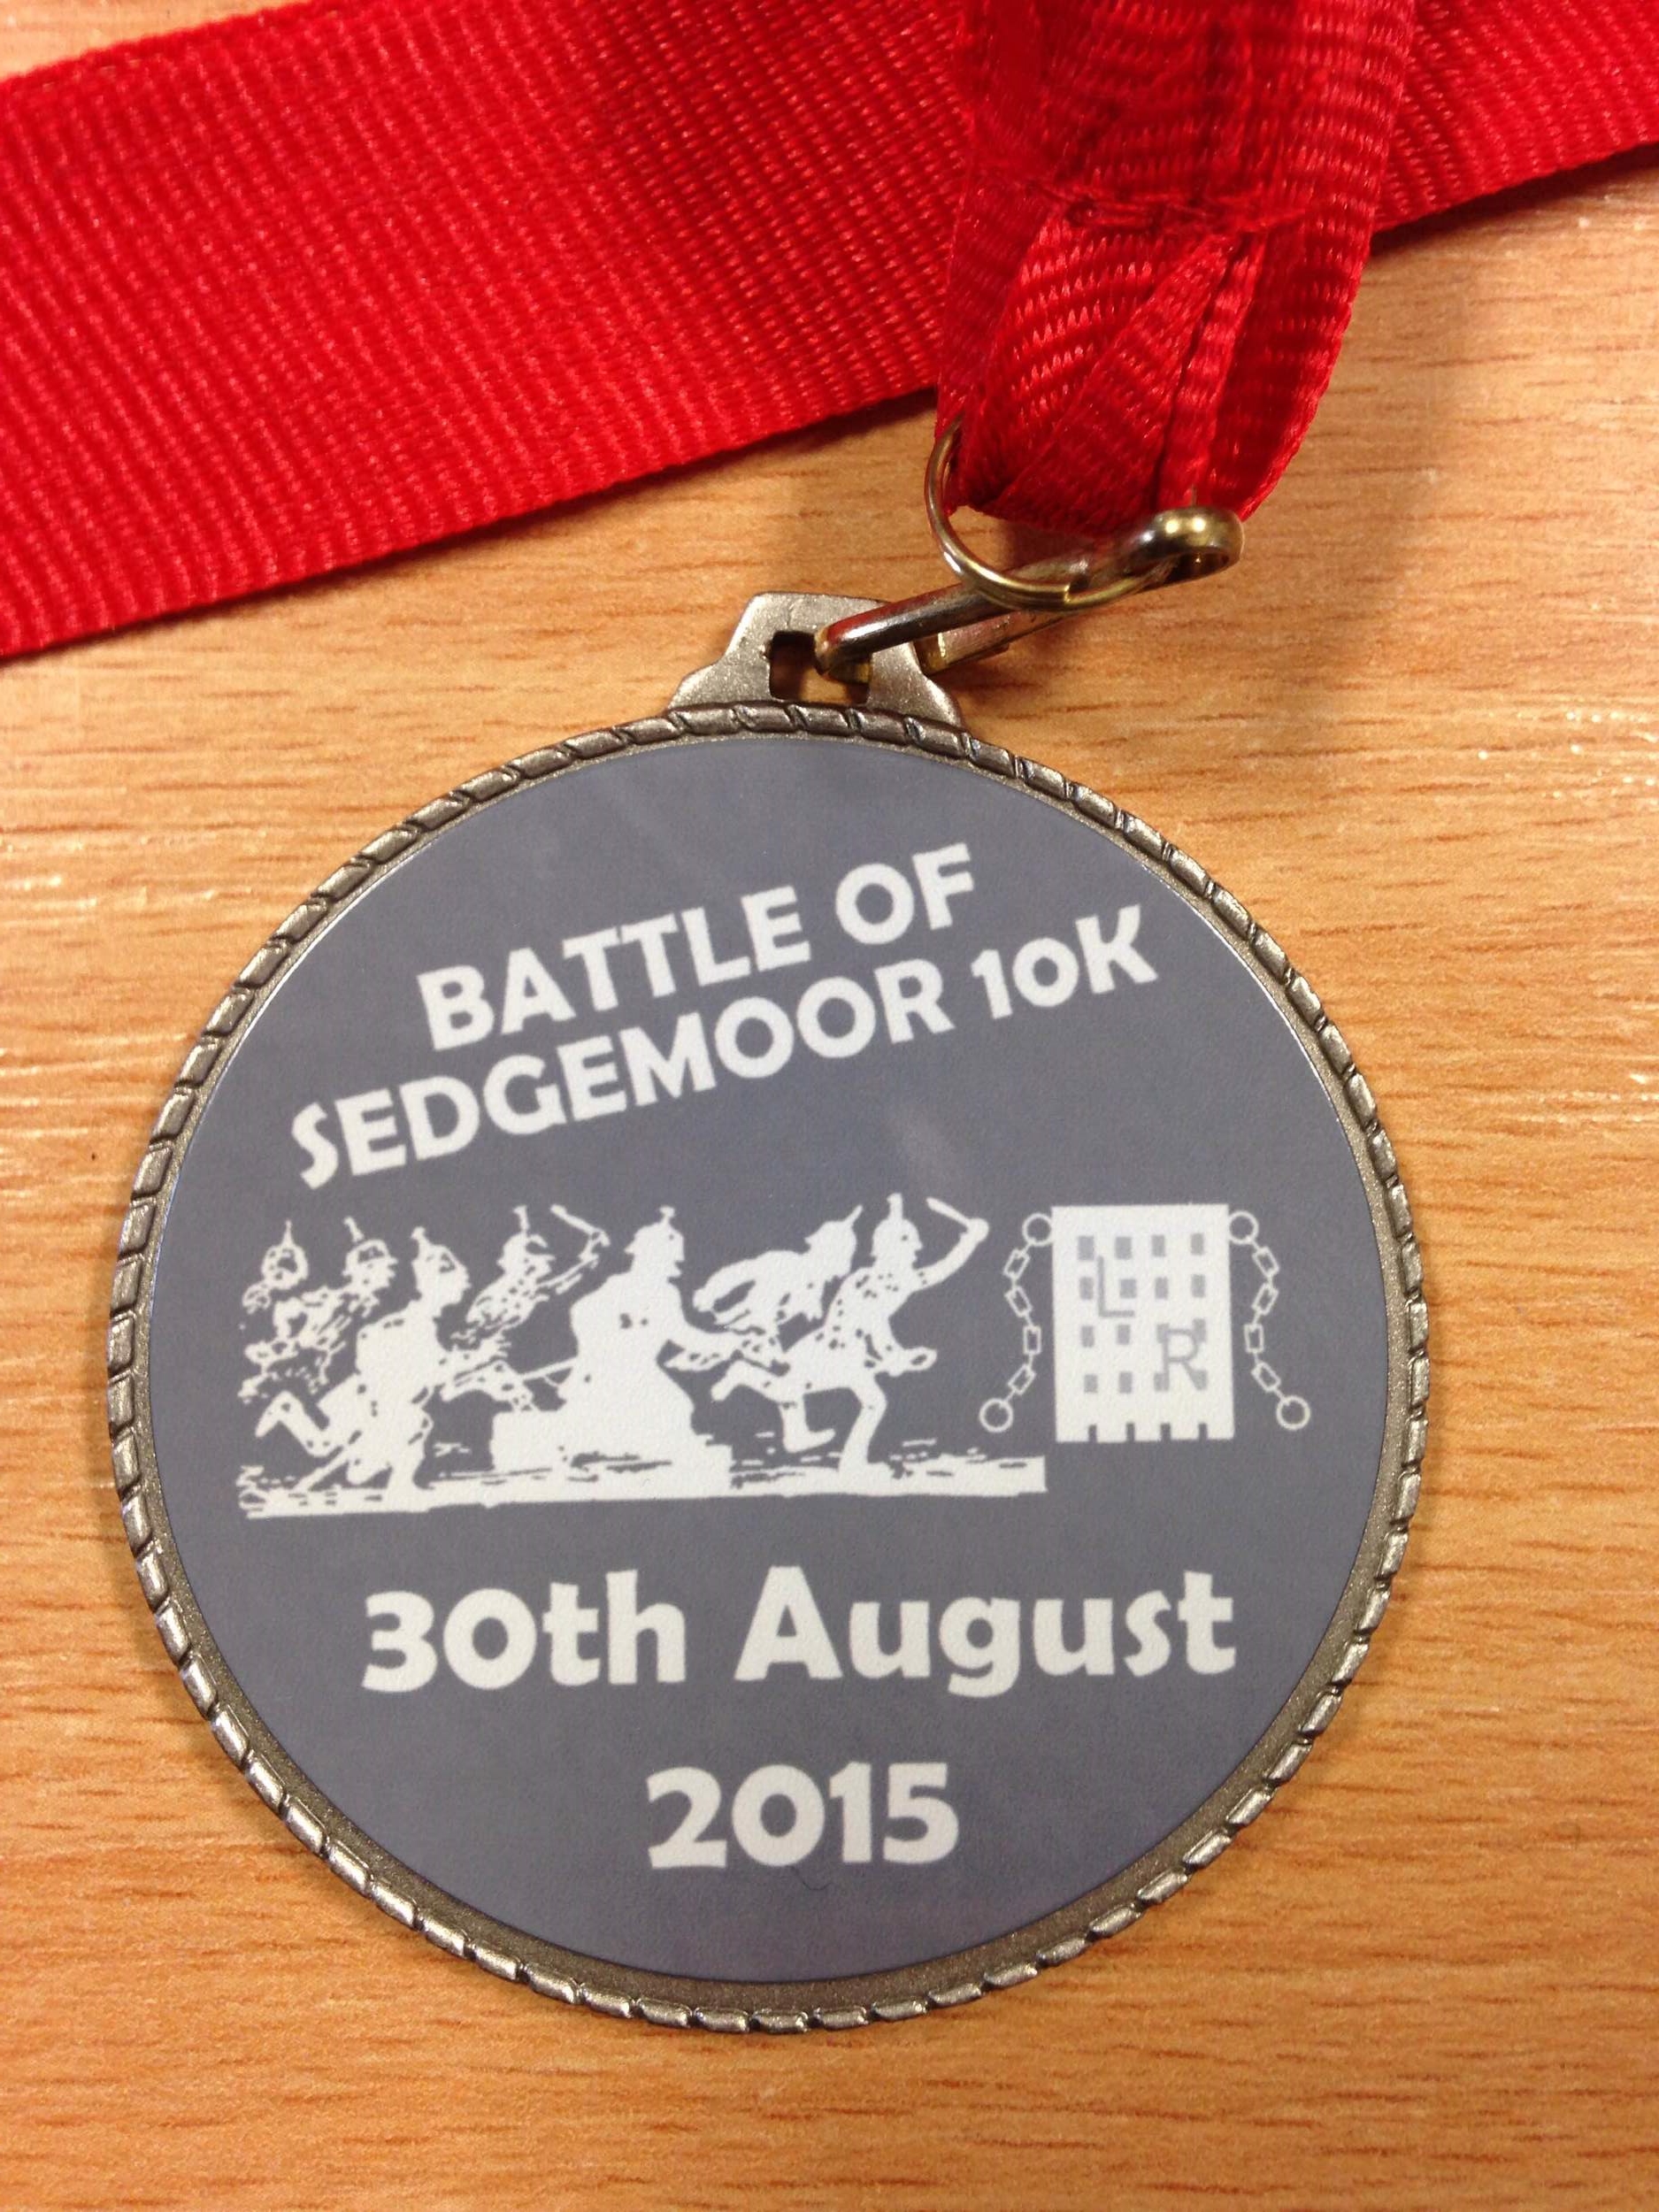 Battle of Sedgemoor 10K